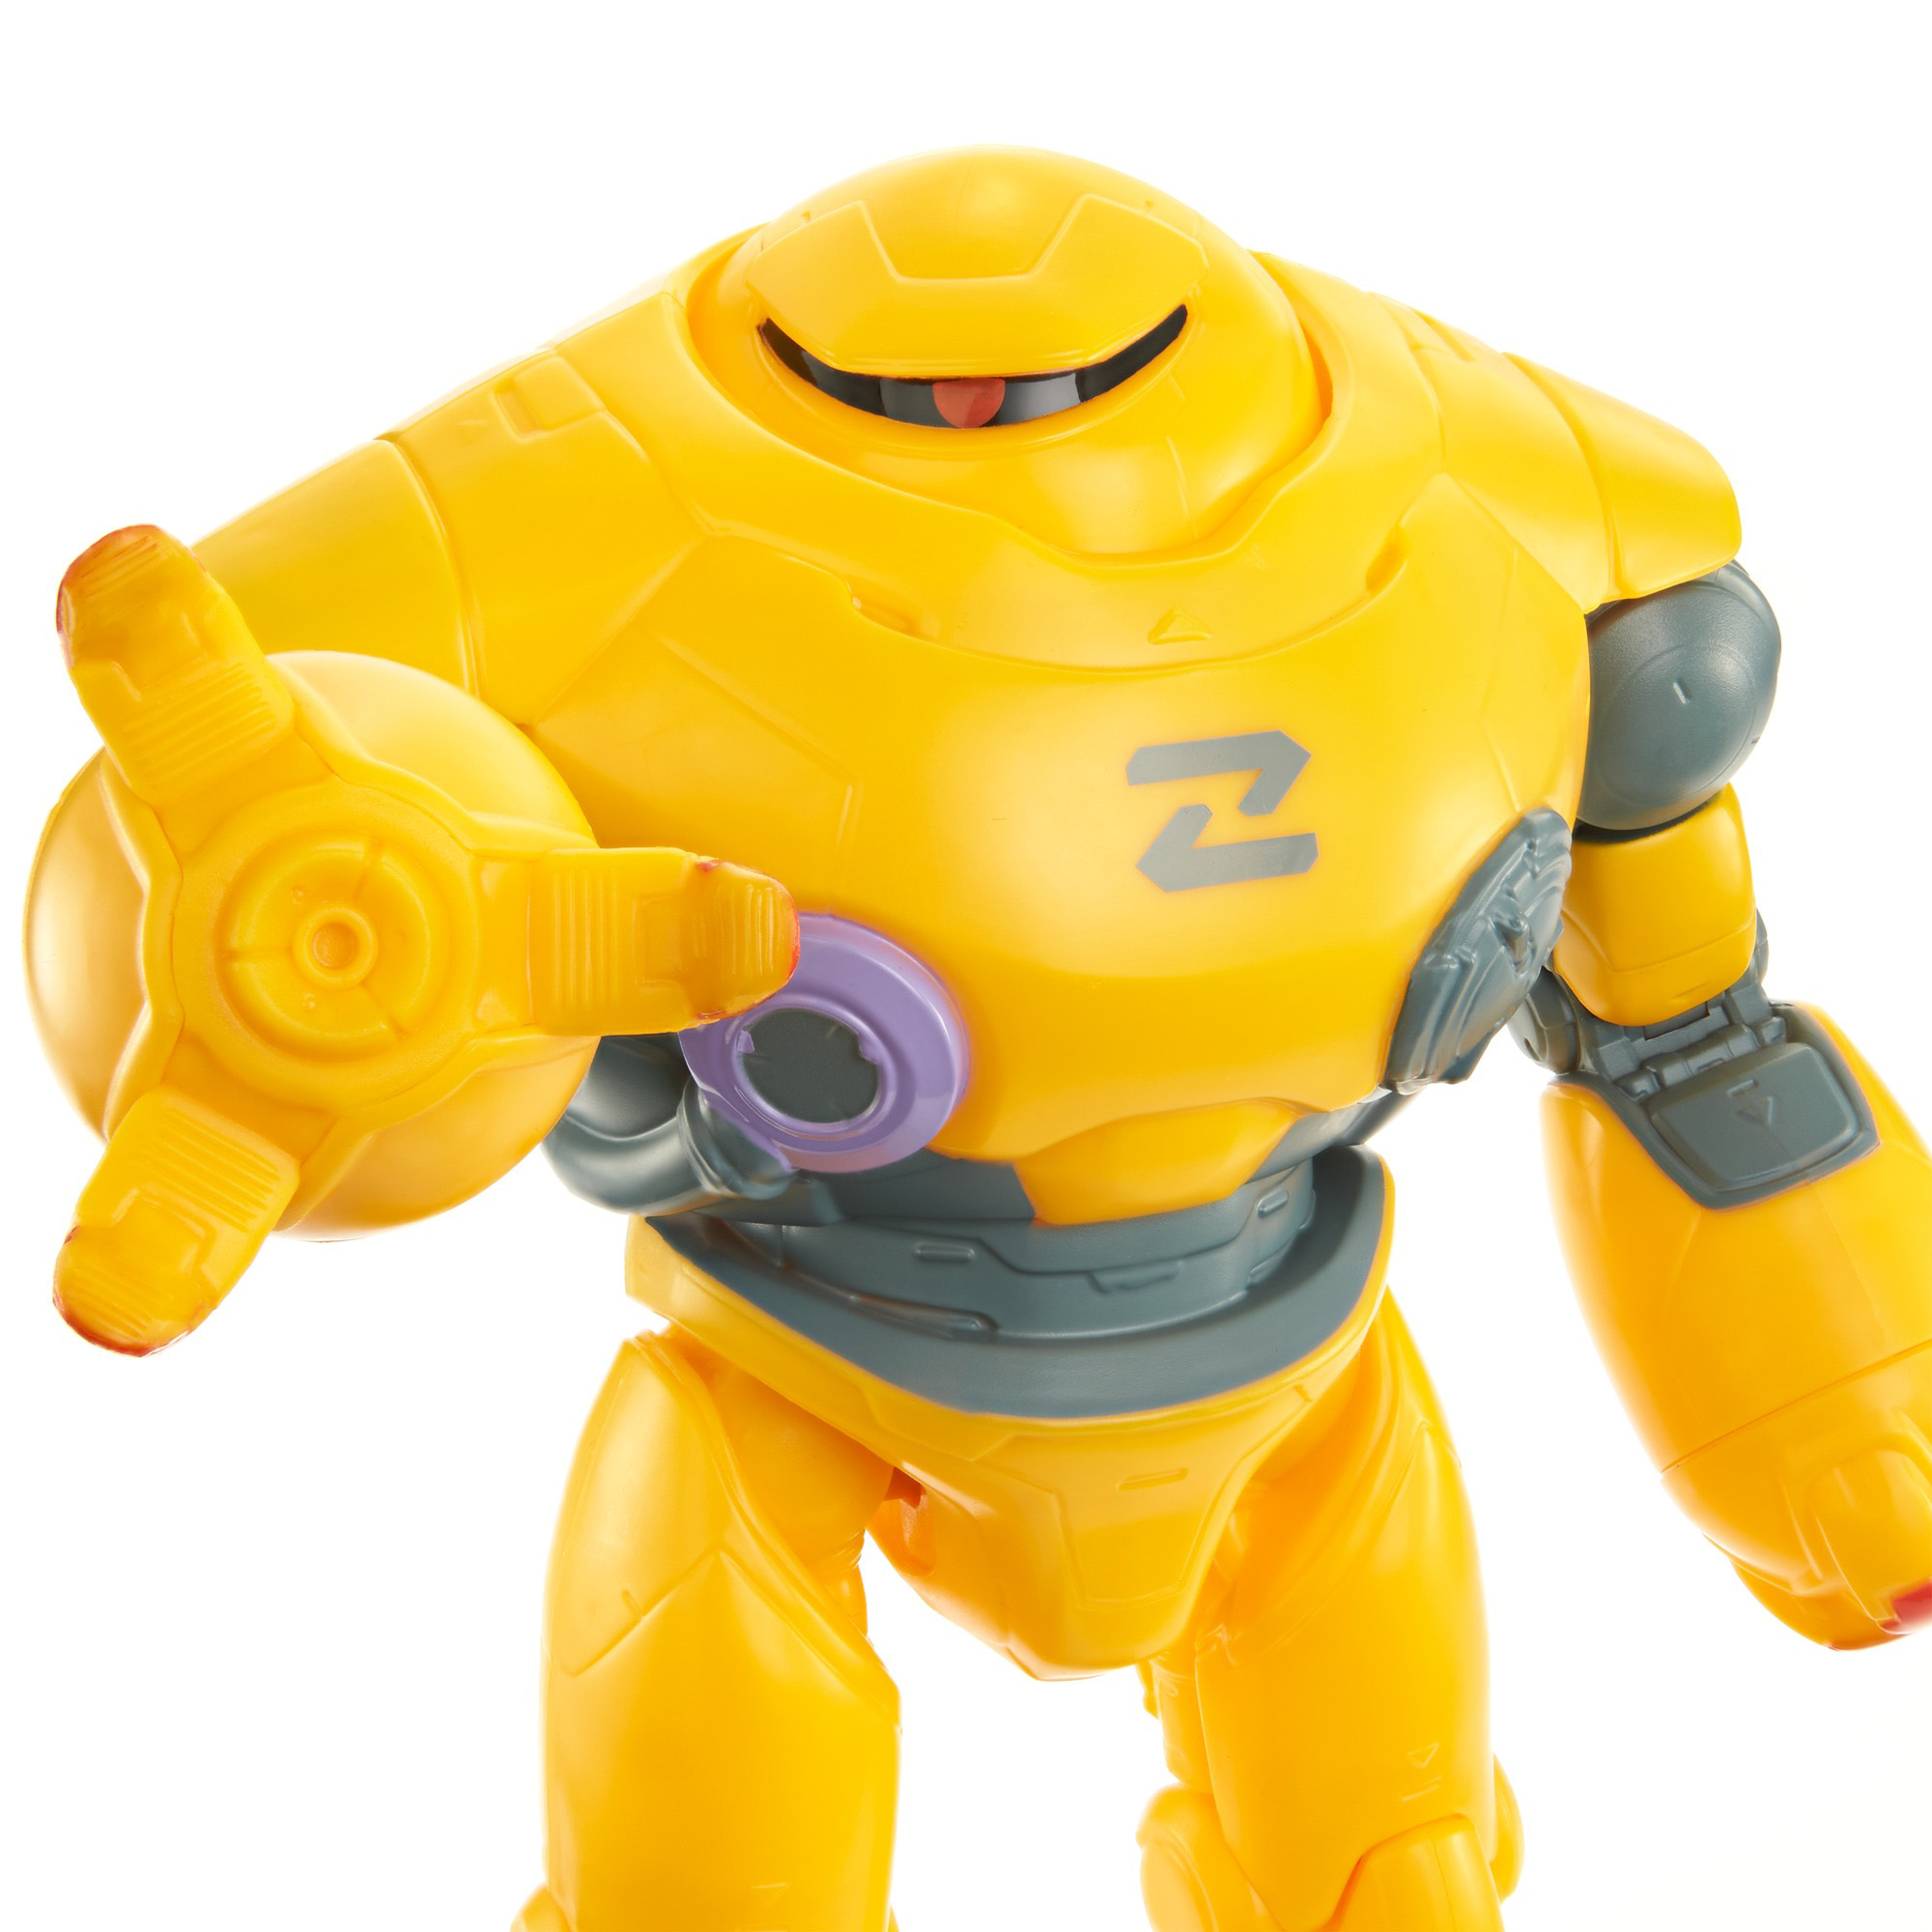 Zyclops Personaggi Grande, 30 cm - Disney Pixar